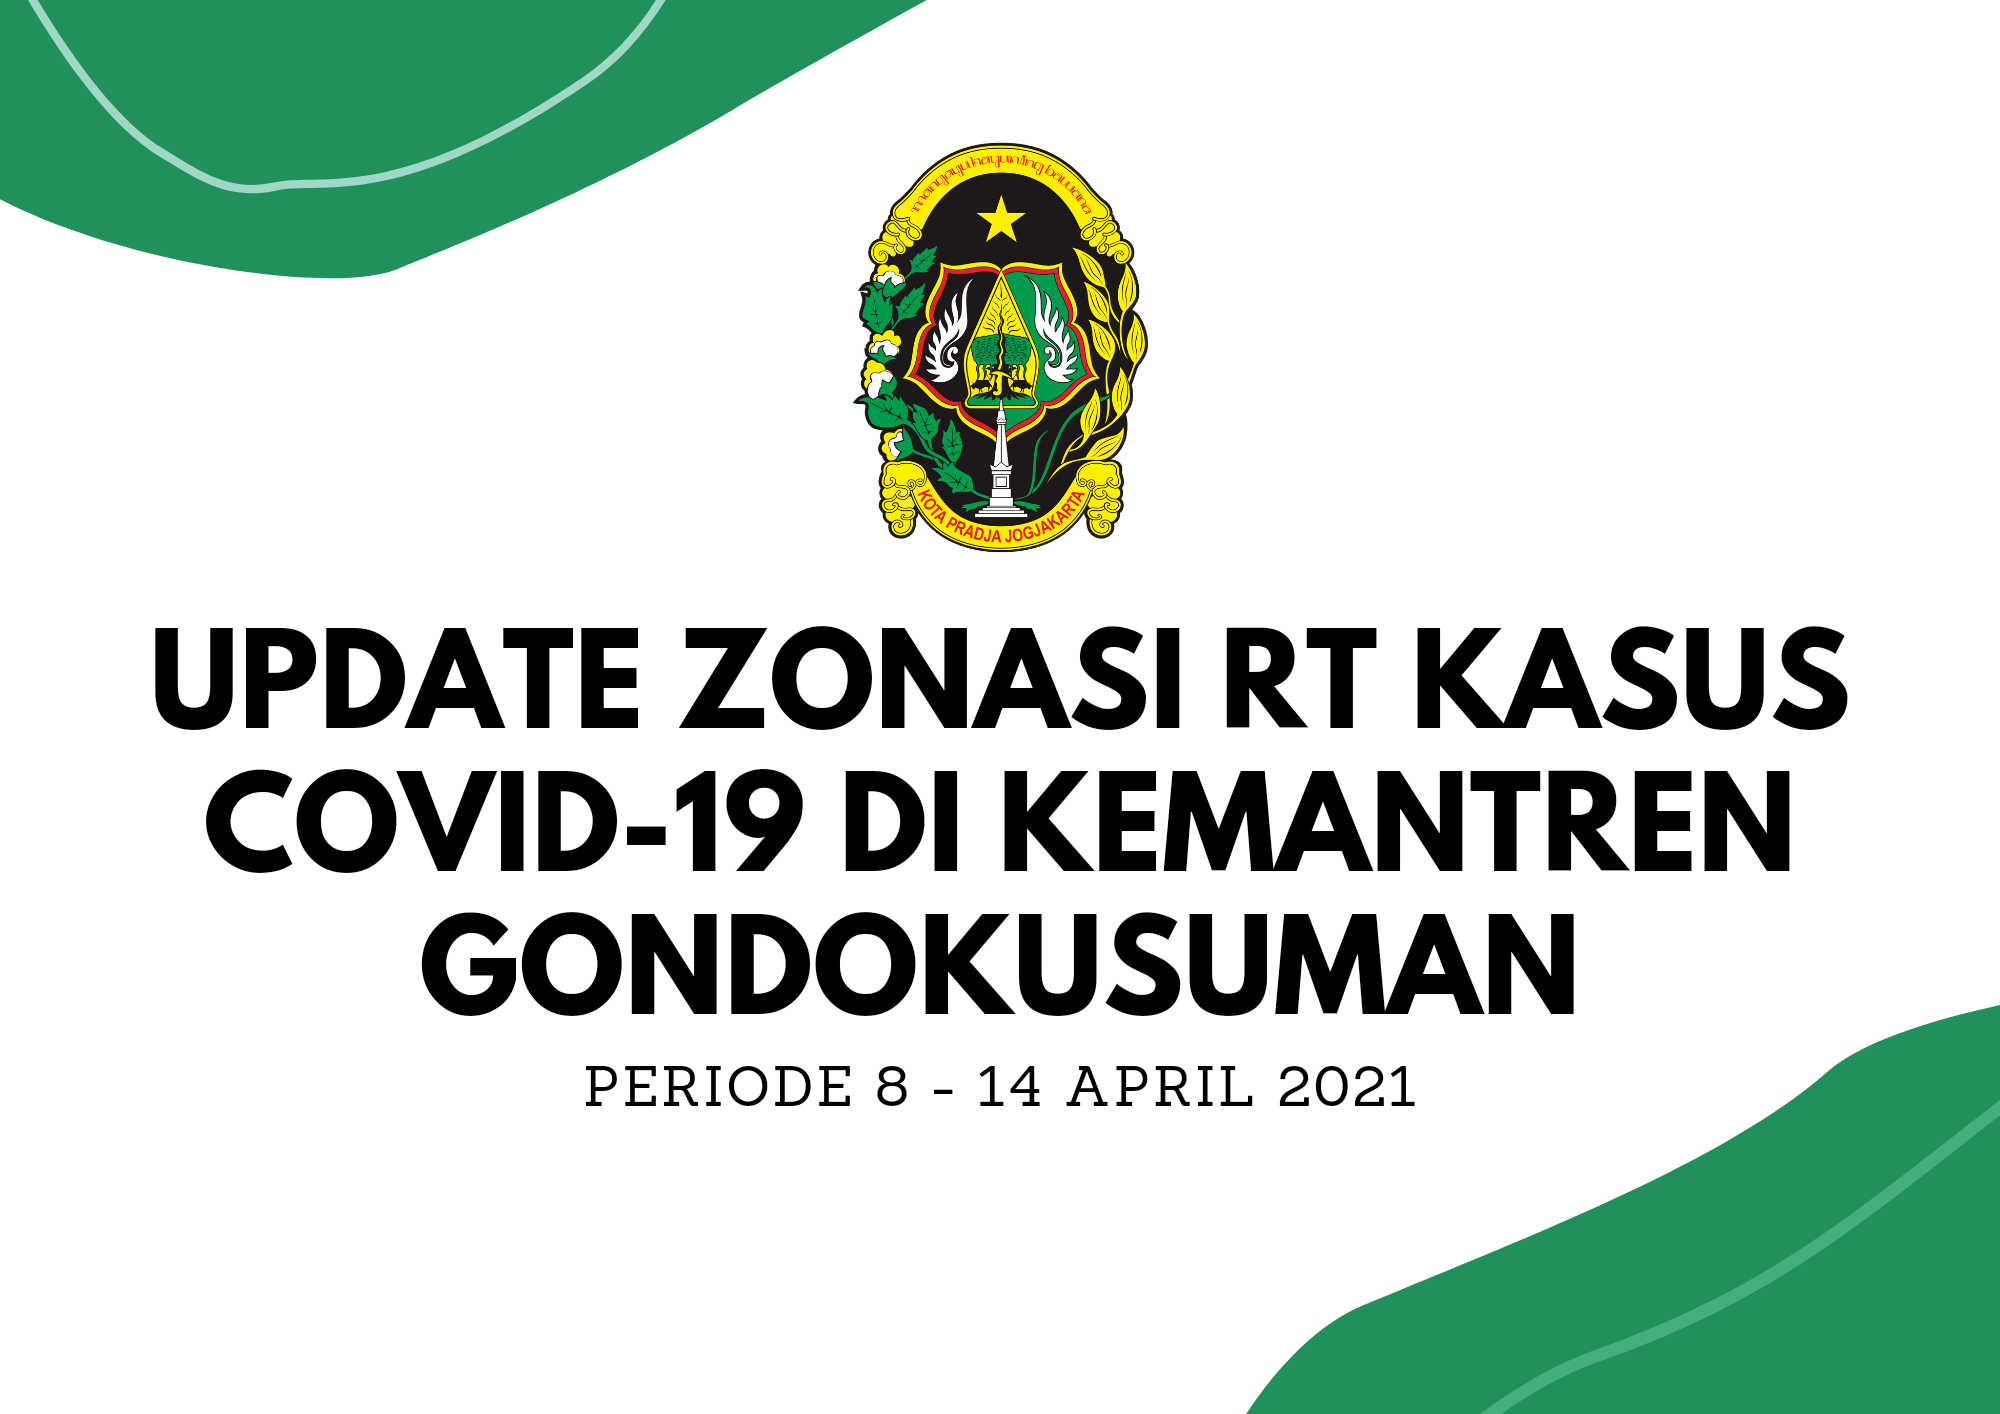 Update Zonasi RT Kasus Covid 19 periode 8 - 14 April 2021 Kemantren Gondokusuman